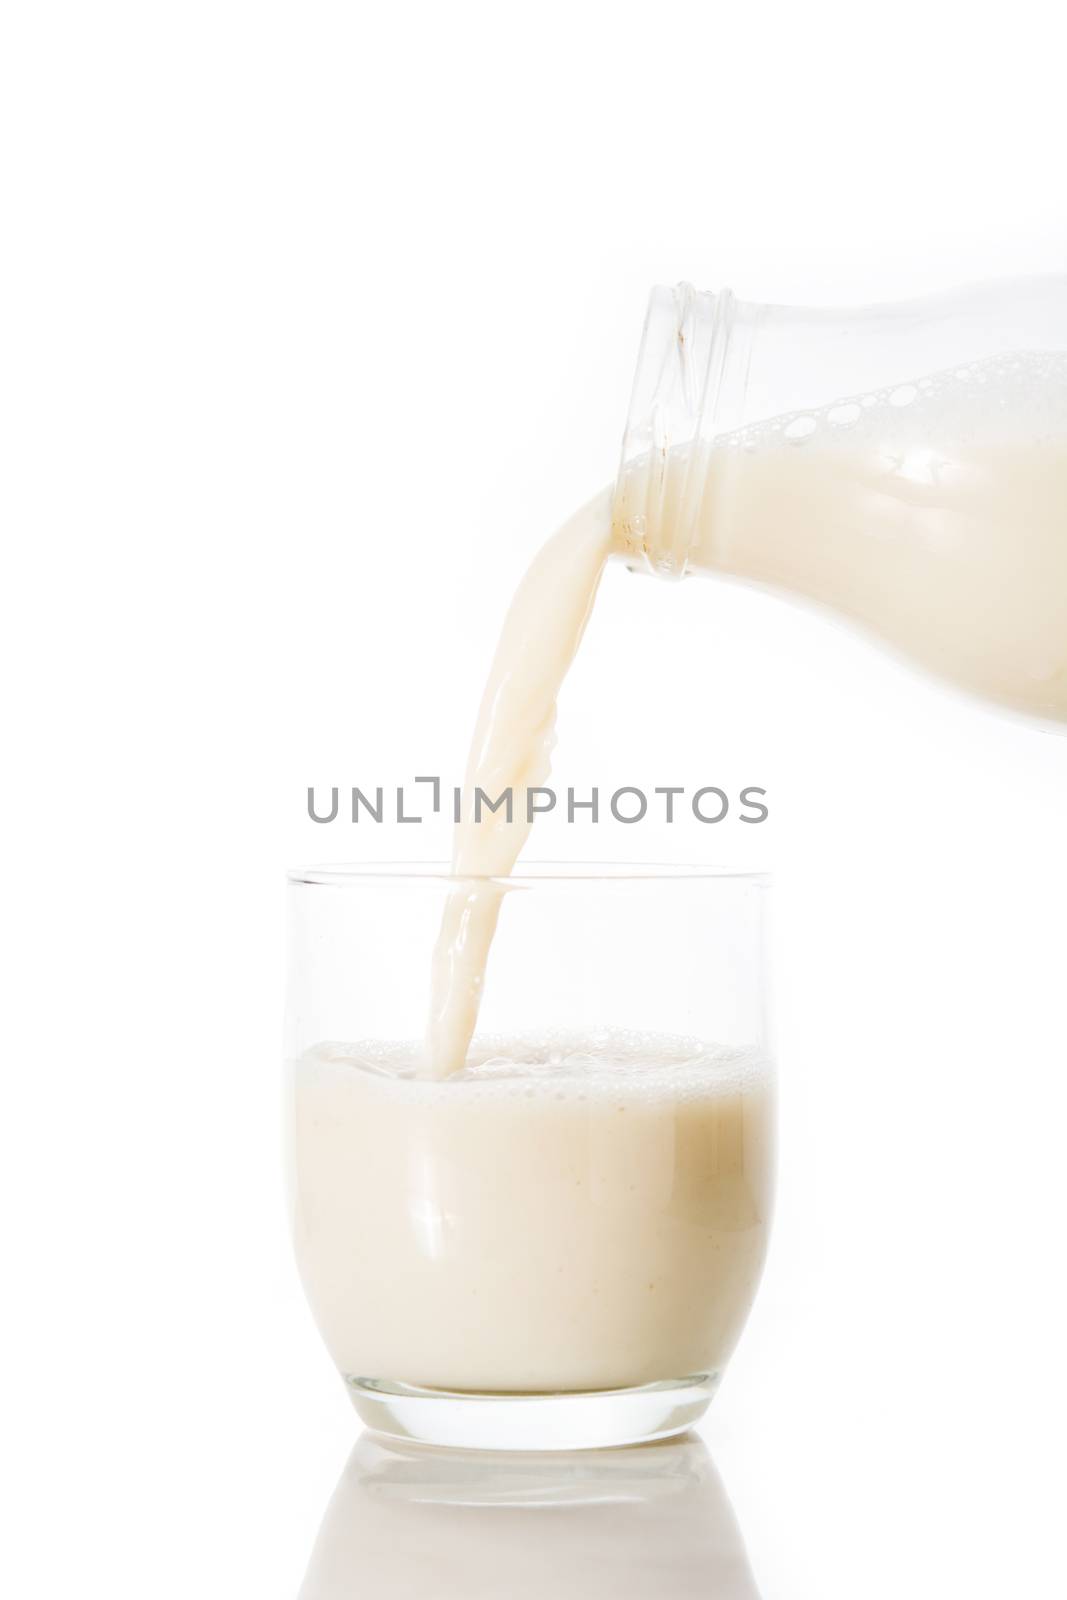 Oats milk in a bottle on wooden table